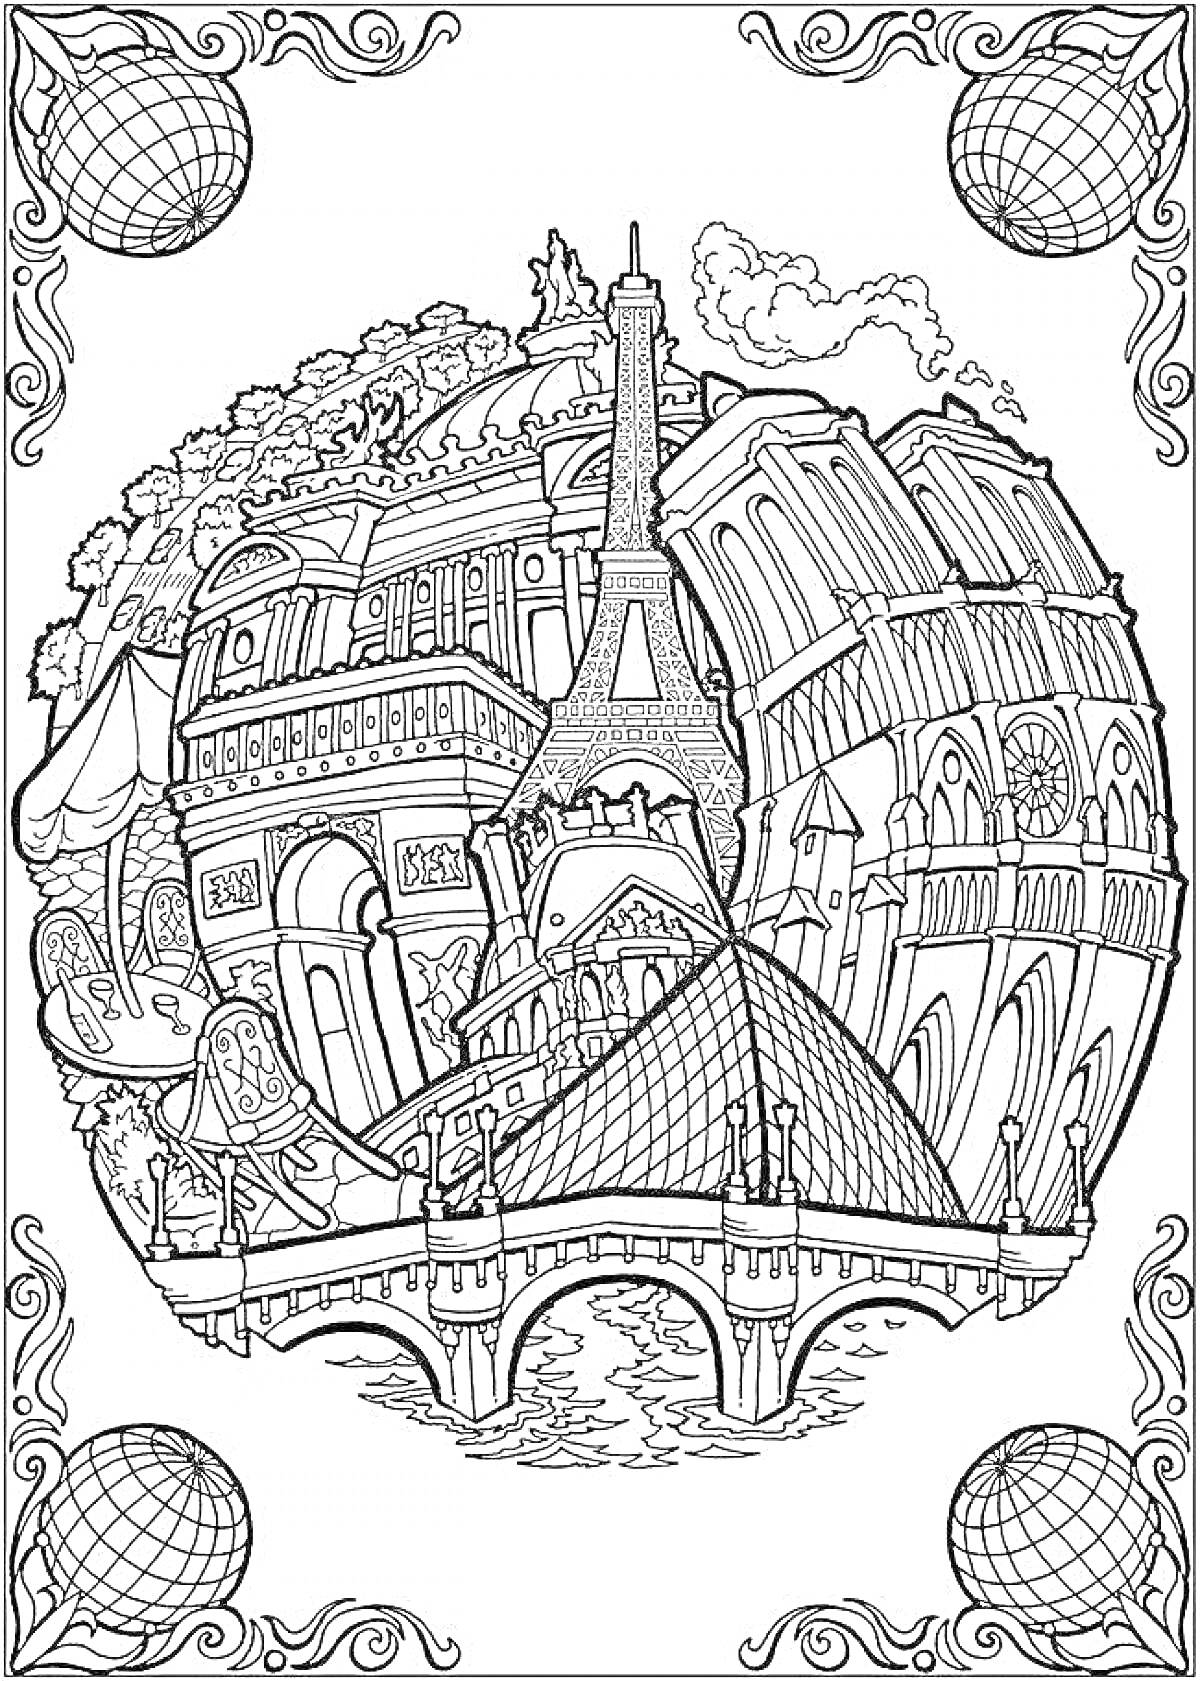 Раскраска Архитектурные достопримечательности: Эйфелева башня, Лувр, Нотр-Дам, городское здание с аркой